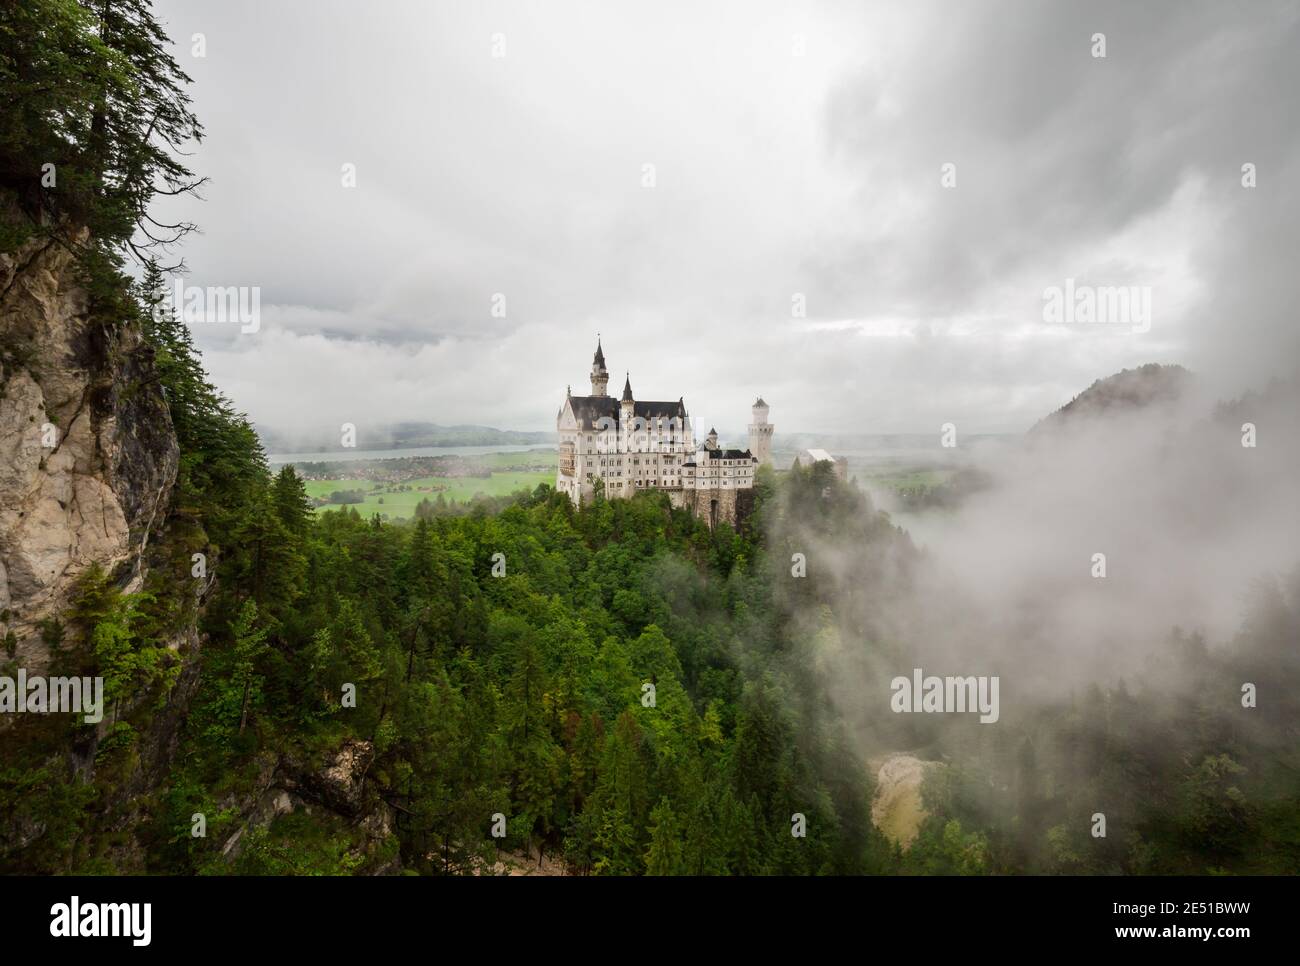 Gran angular vista de un paisaje alemán con un antiguo castillo rodeado de nubes bajas, contra un cielo nublado oscuro Foto de stock